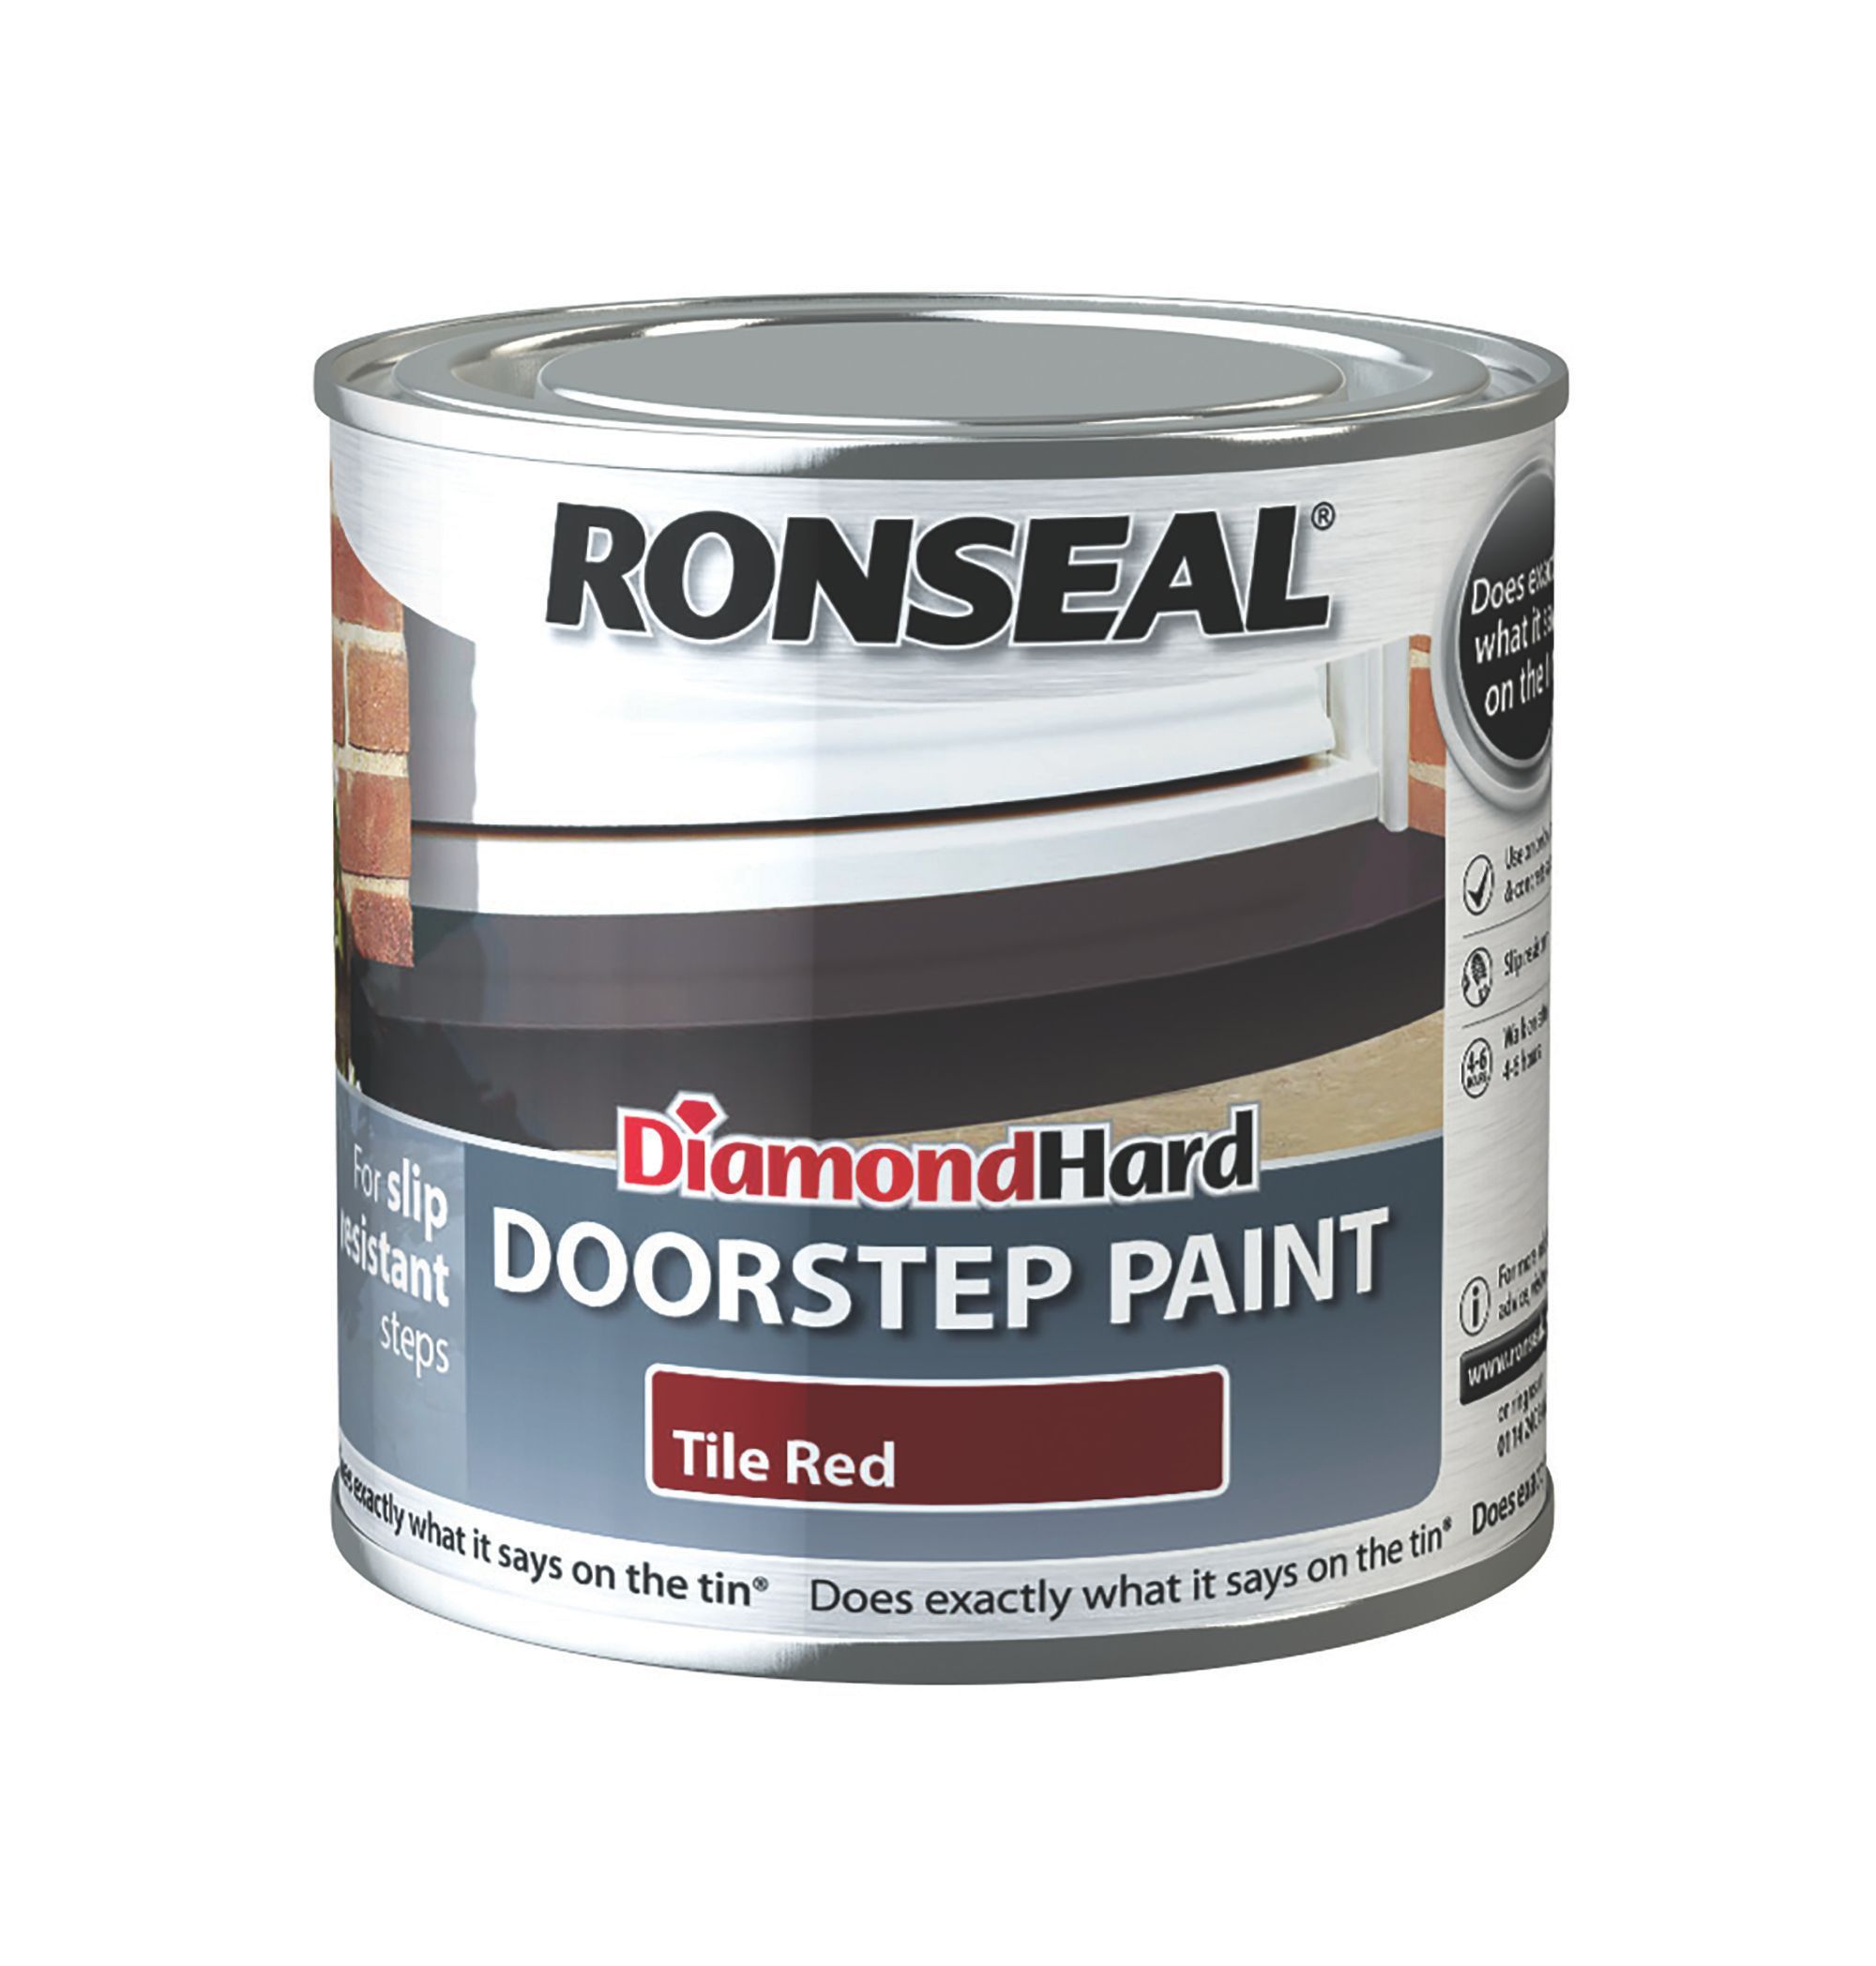 Ronseal Tile red Satinwood Doorstep paint, 250ml